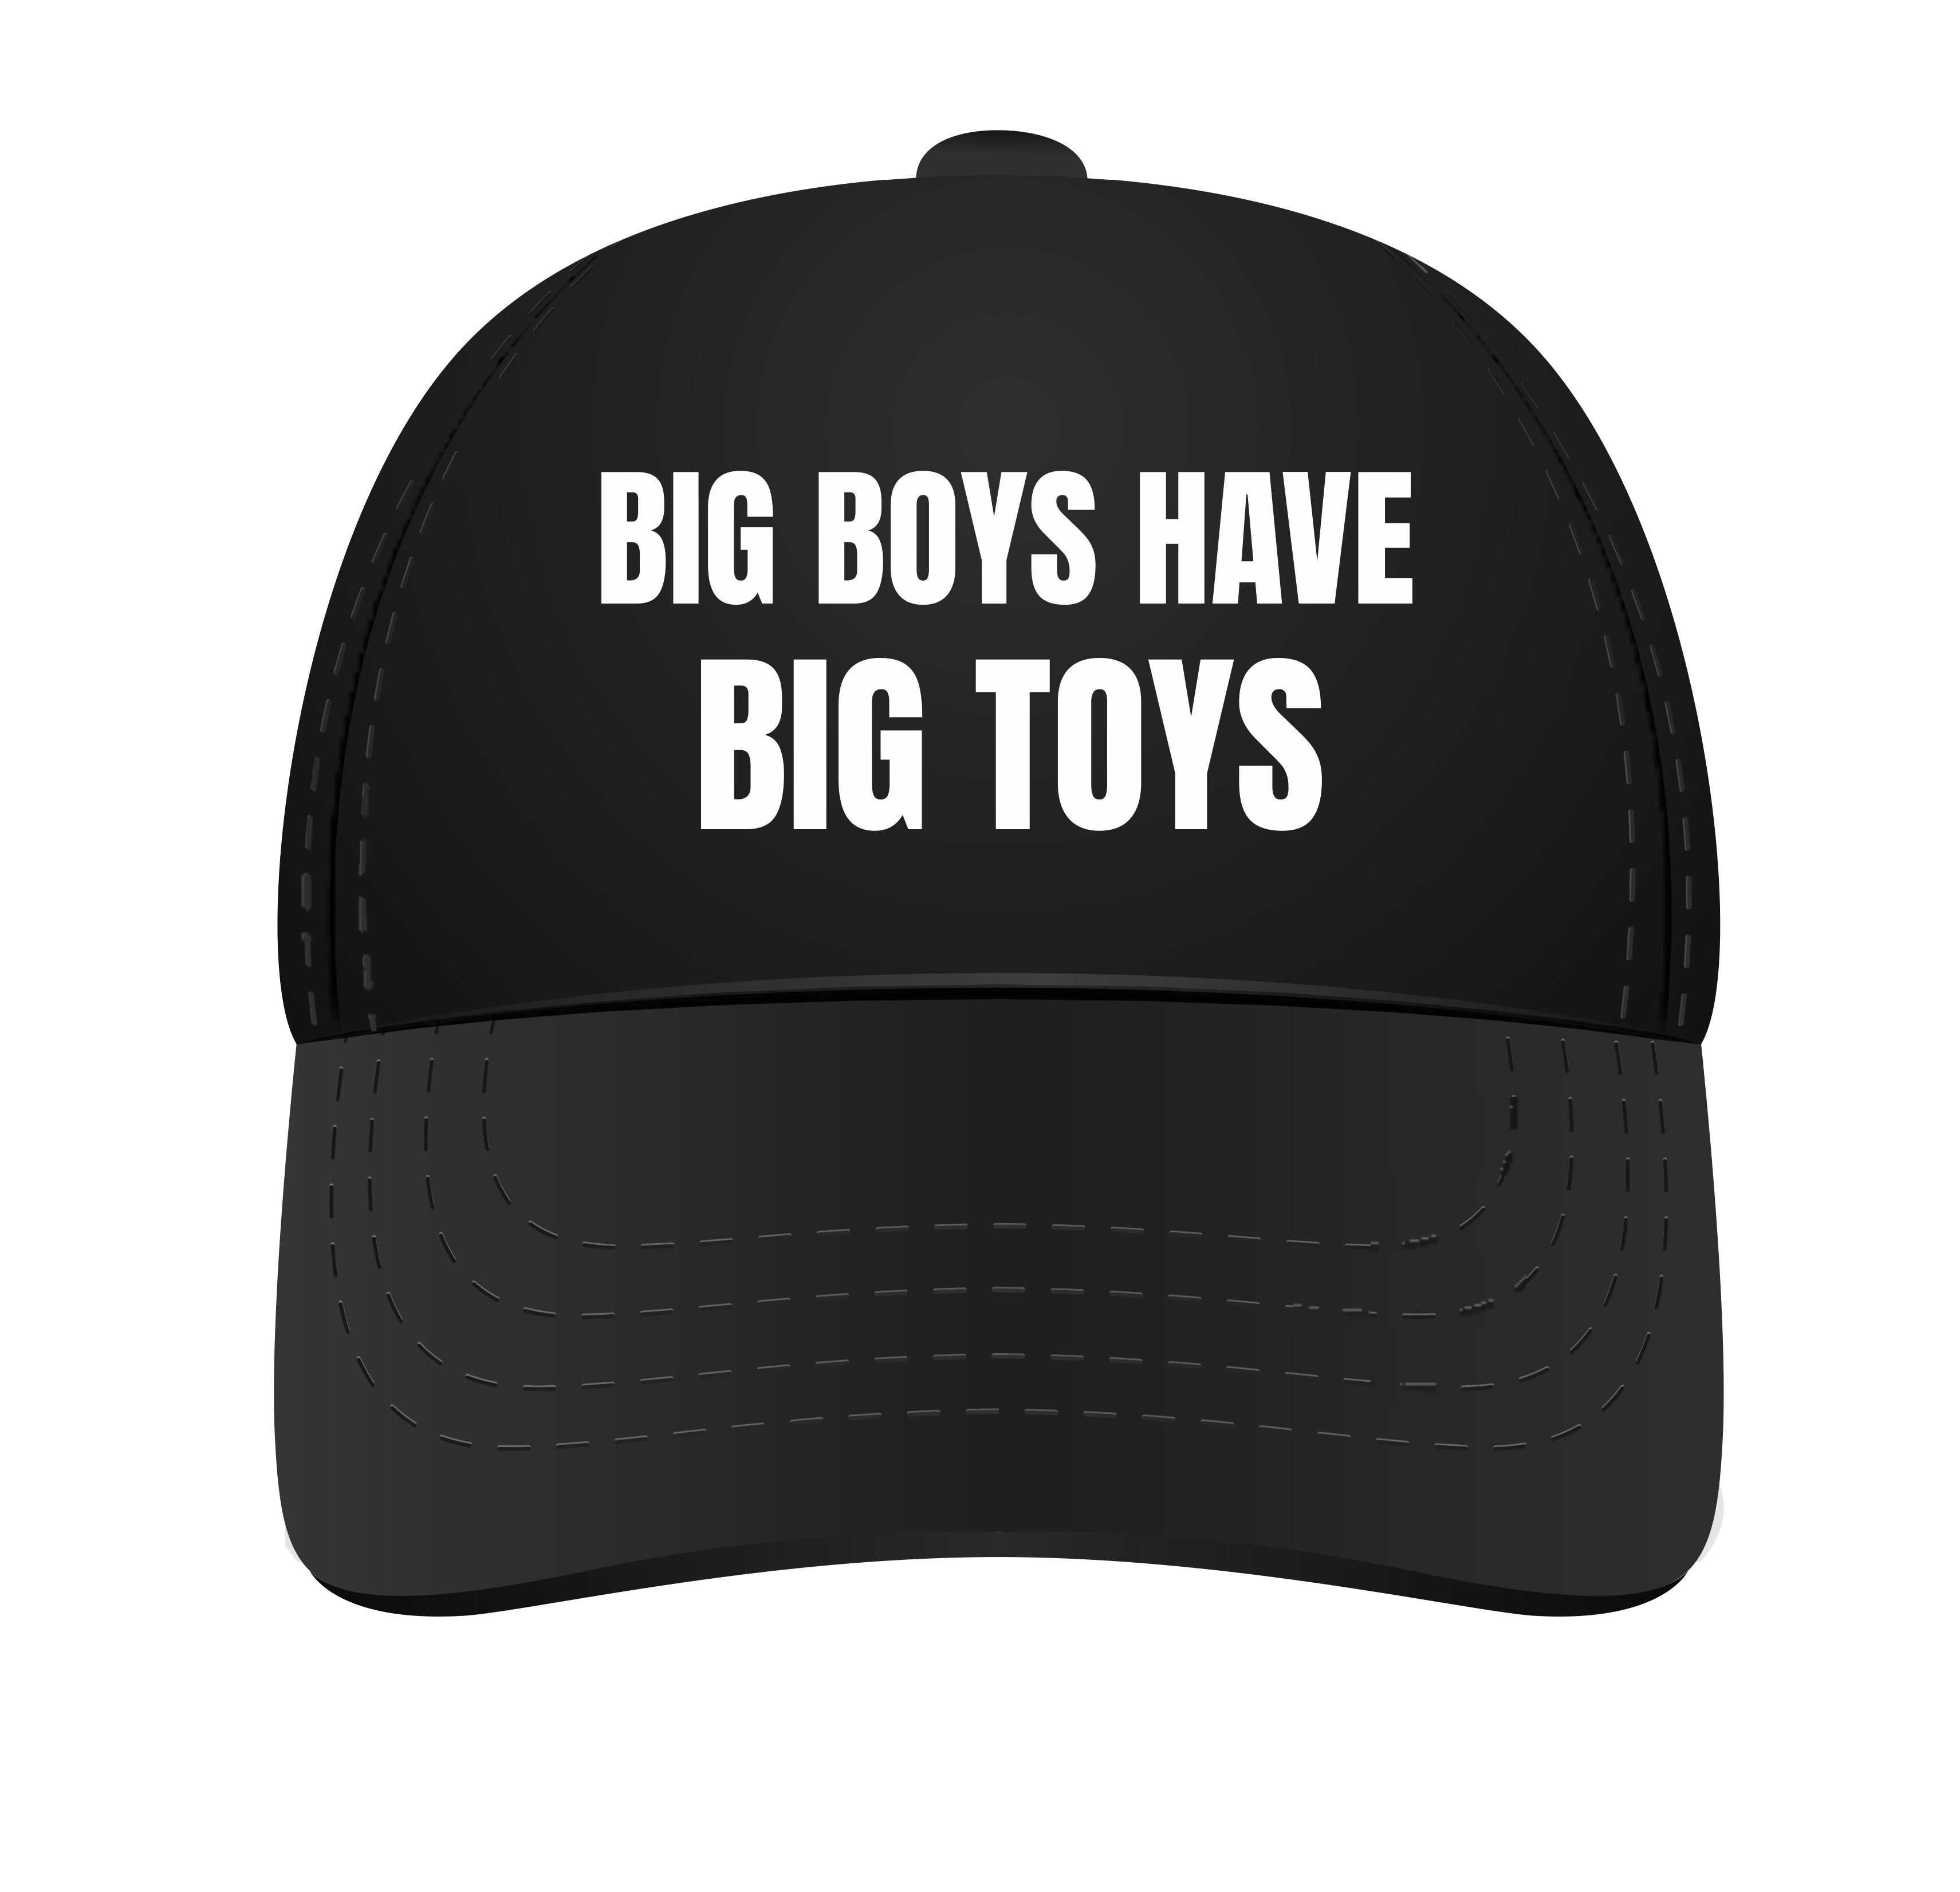 Pet voor grote stoere kerels jongens mannen big boys have big toys leuk stroer grappig petje